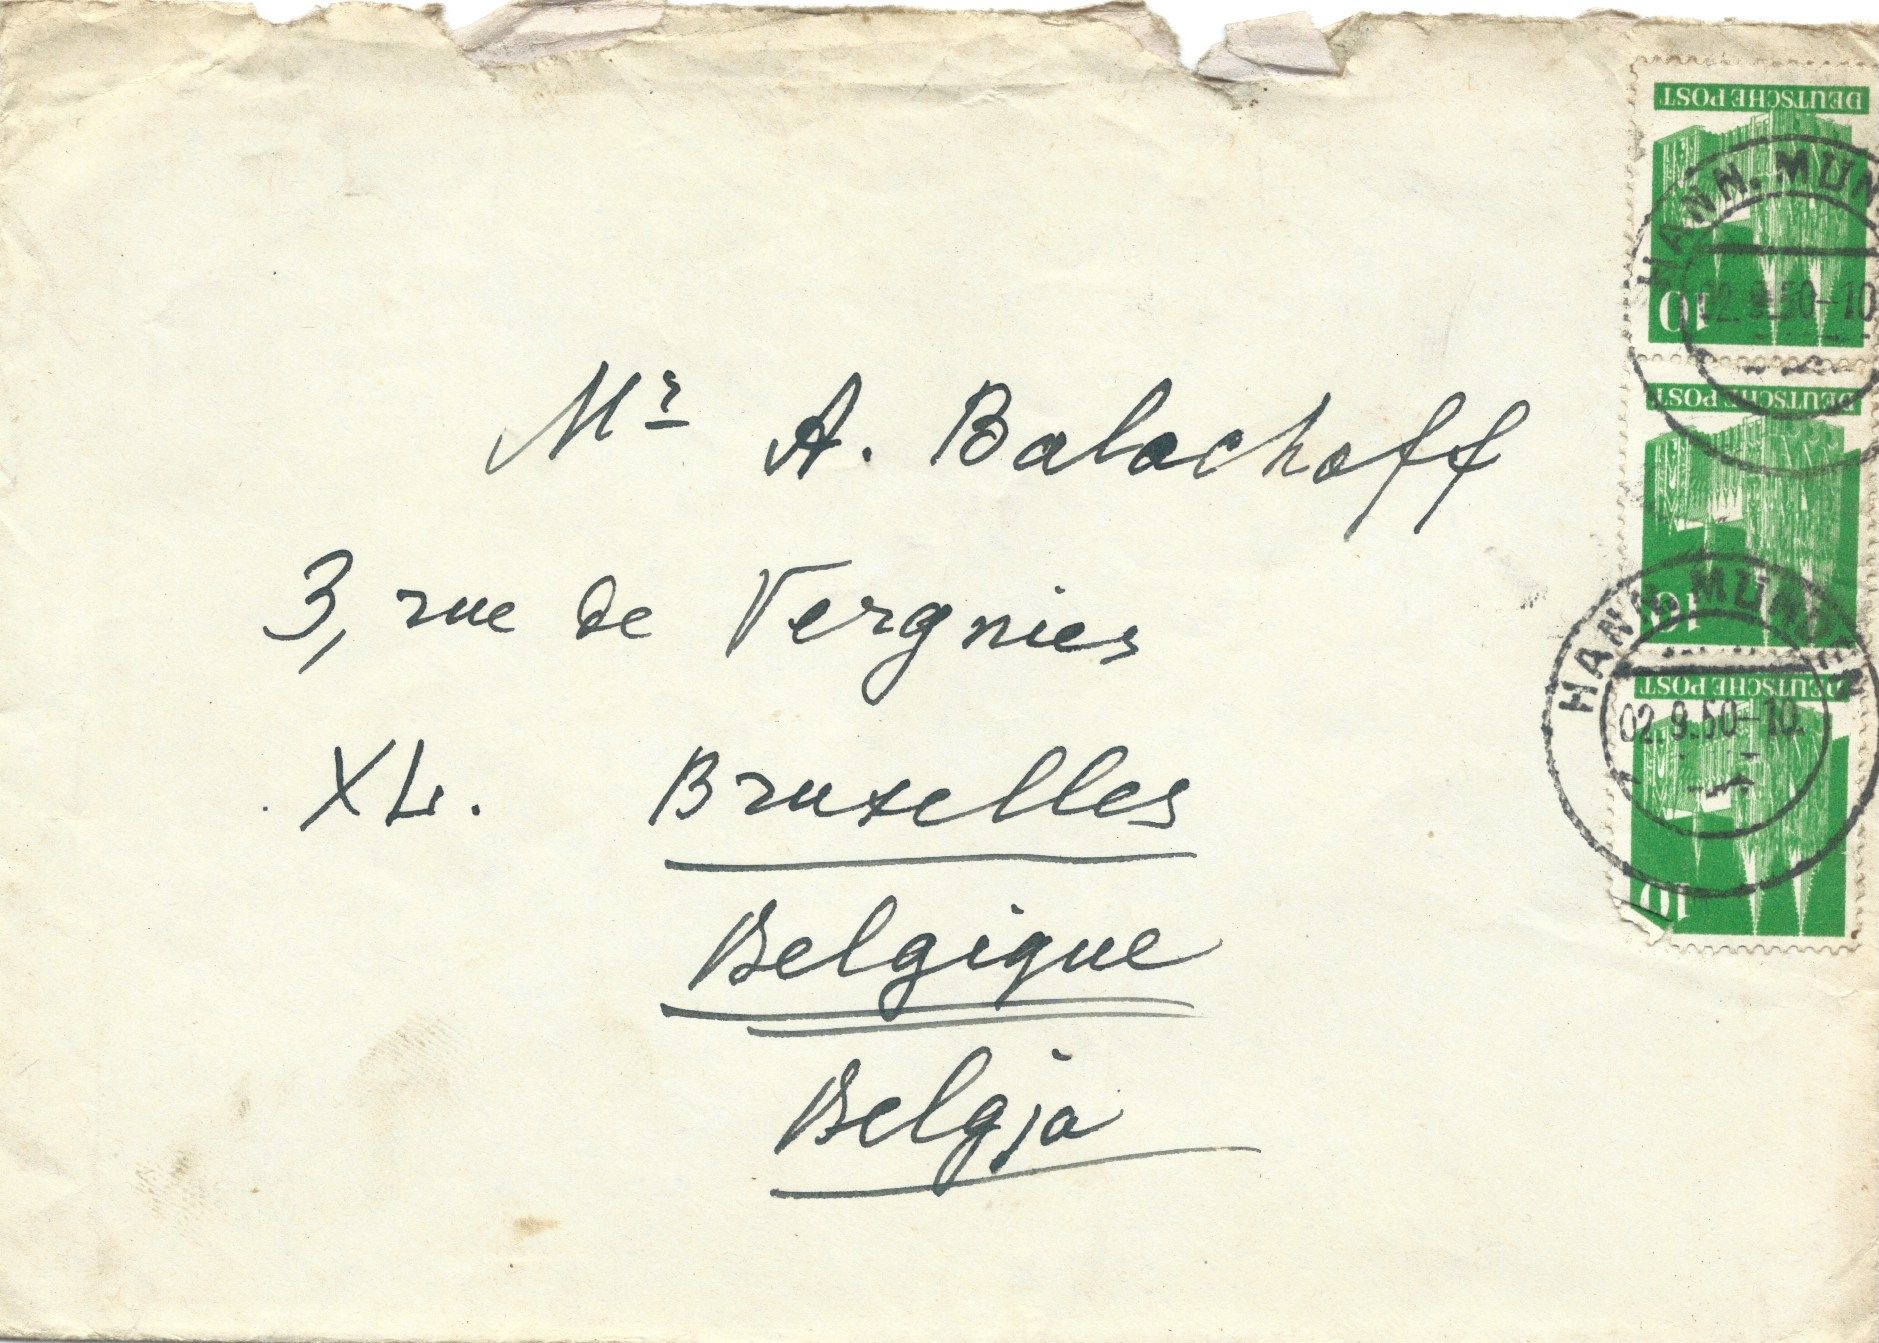 Null ARCHIV von Andrej BALASCHOW (1899-1969)

Archiv der Briefe und Gedichte von&hellip;